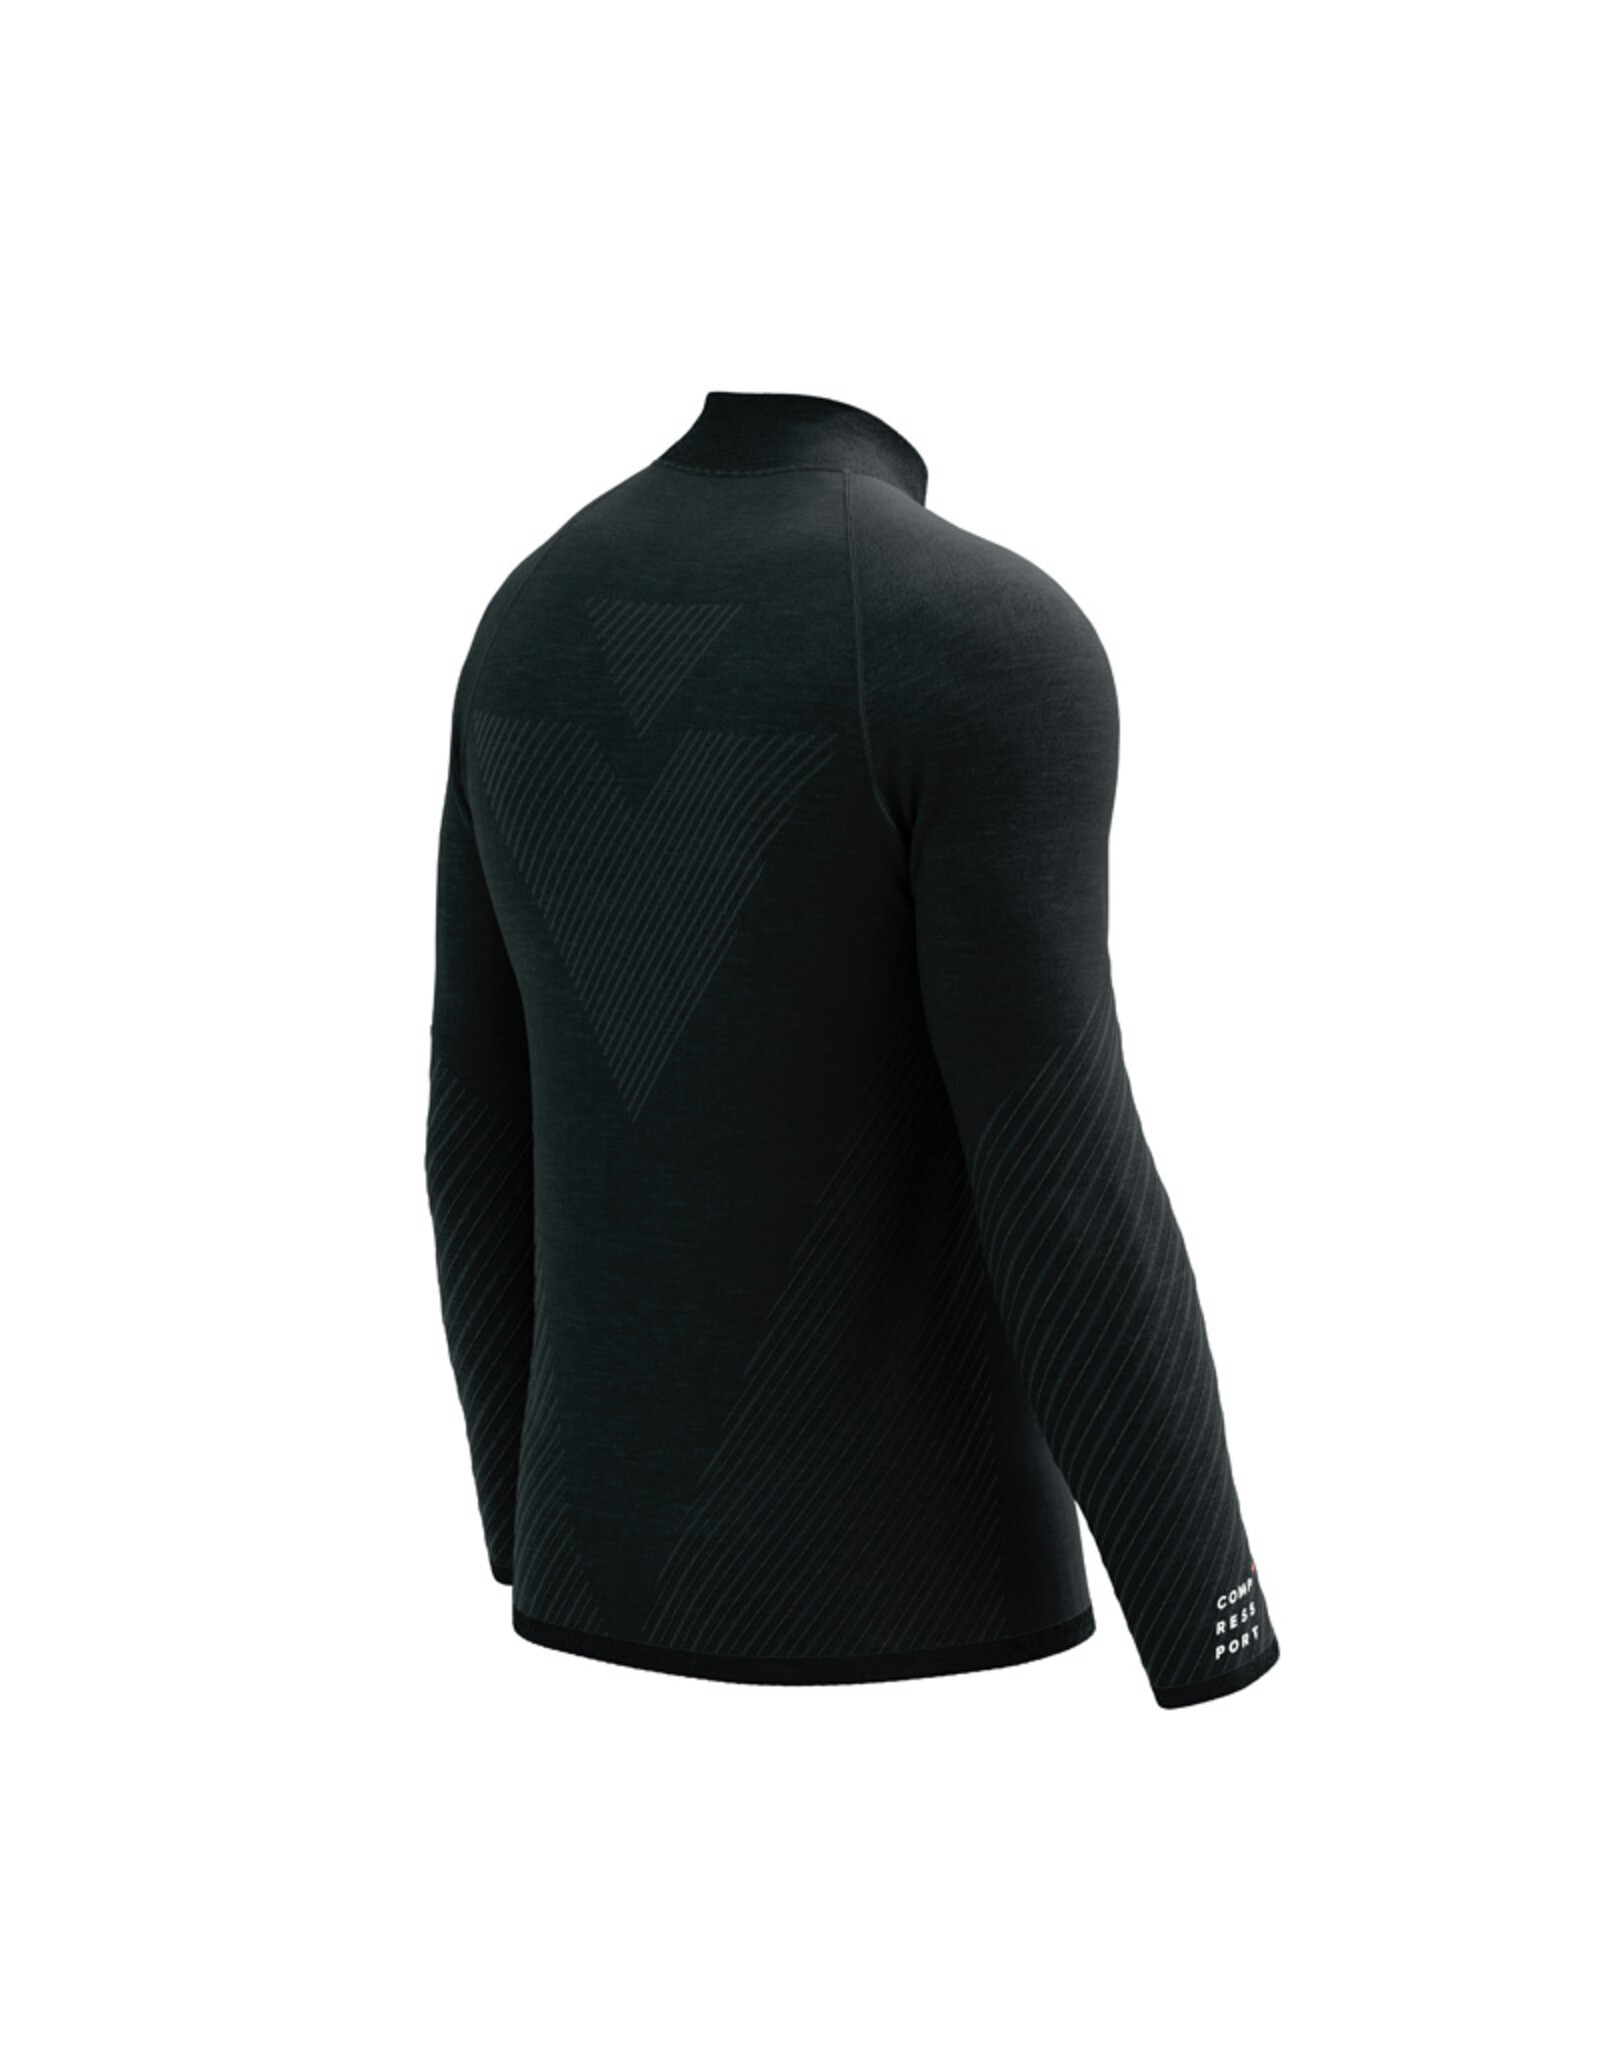 Compressport Seamless Zip Sweatshirt - Black Melange